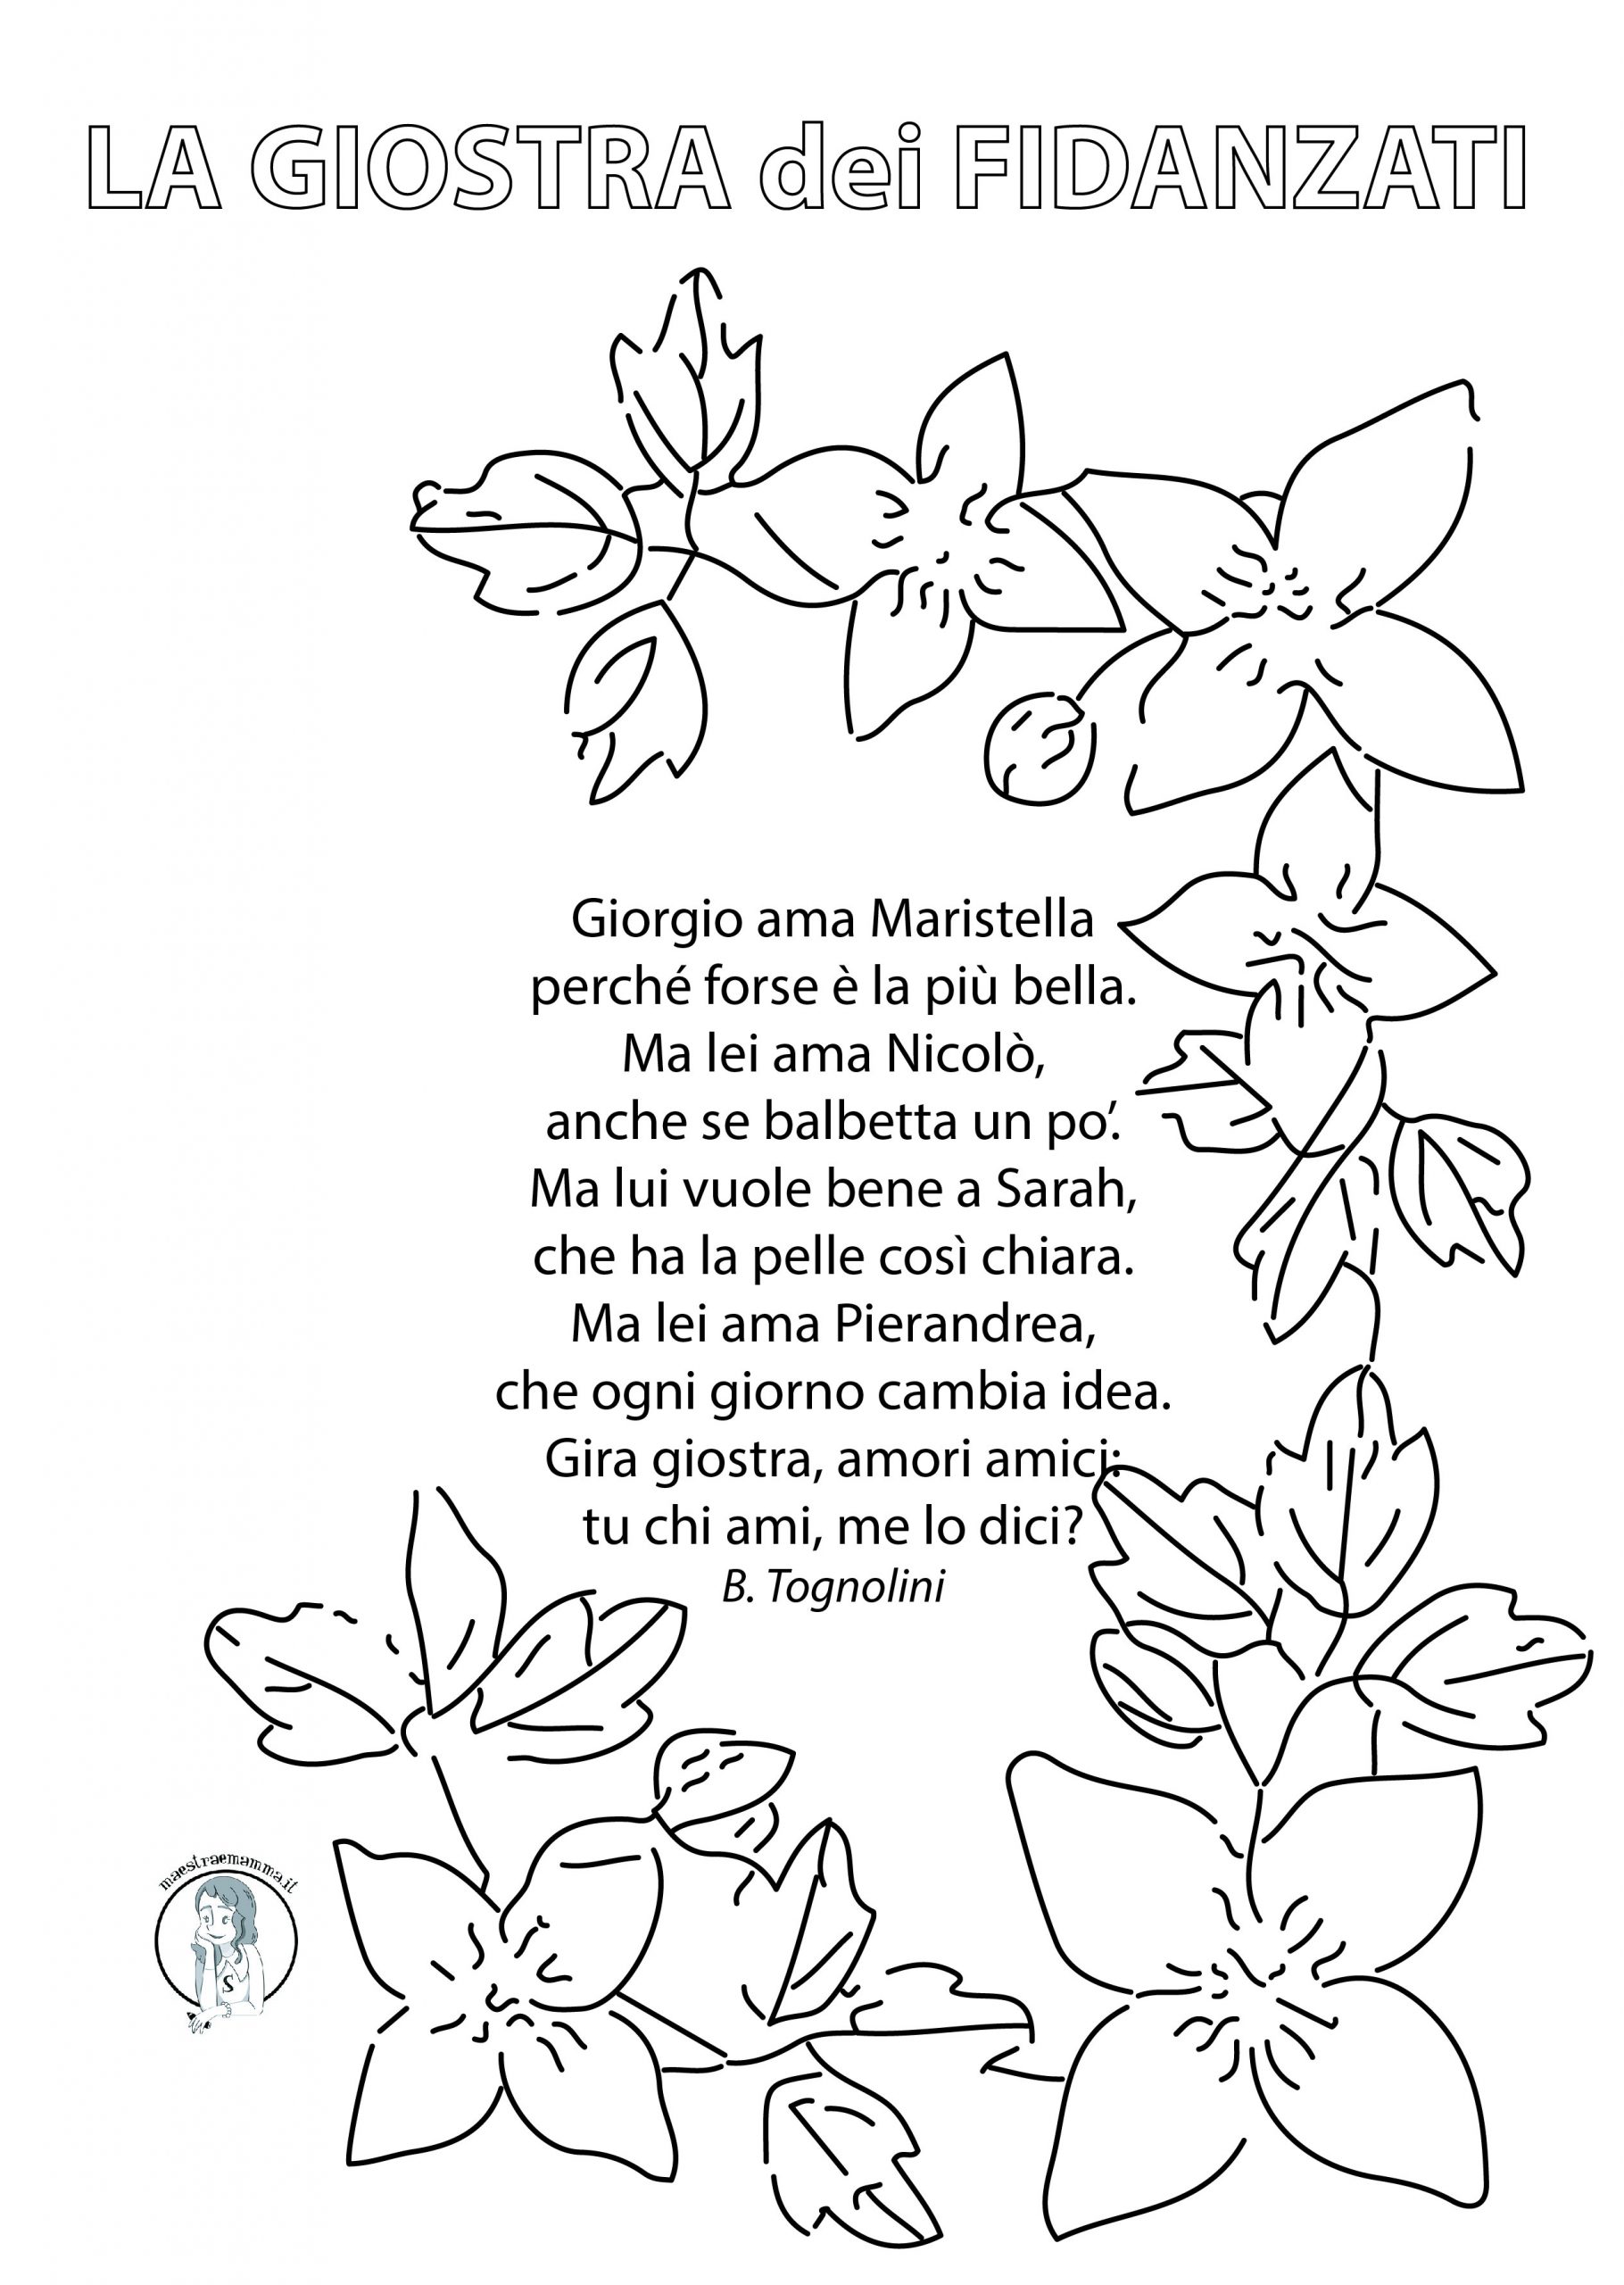 La giostra dei fidanzati - poesia per San valentino di Bruno Tognolini